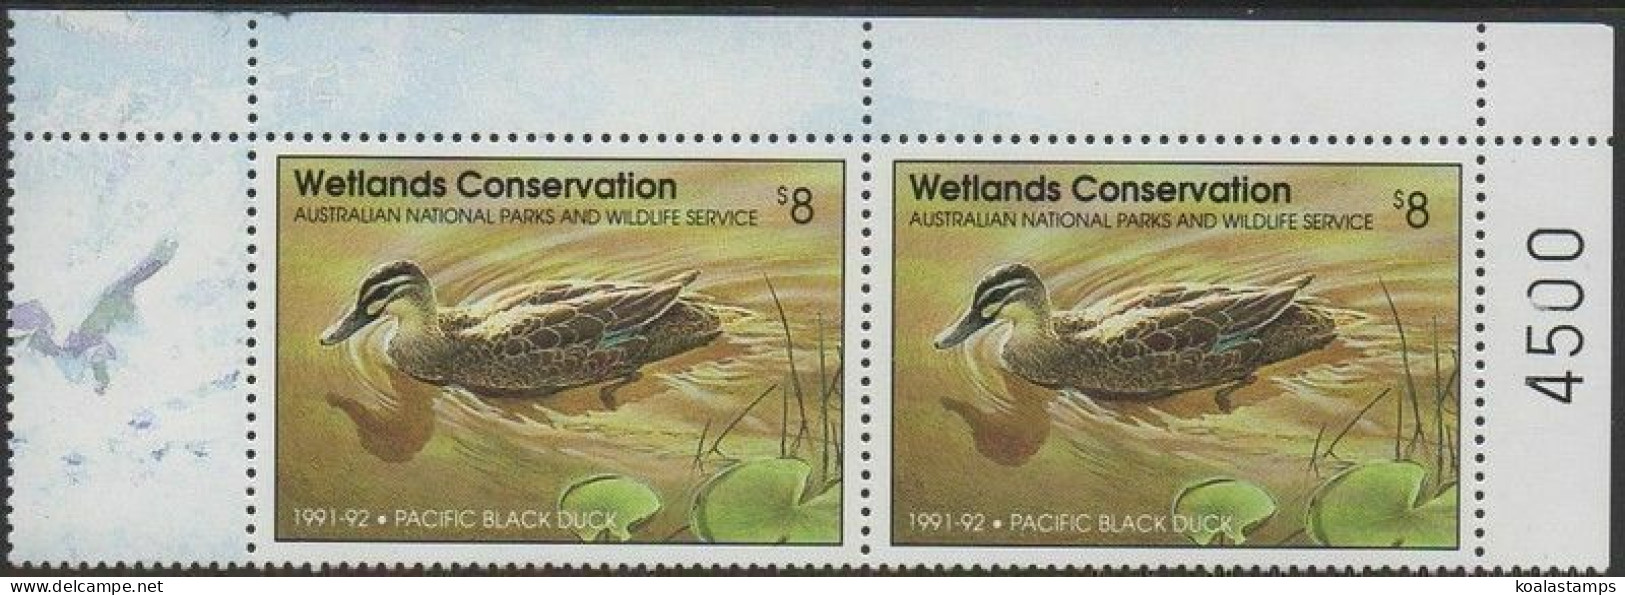 Australia Cinderella Ducks 1991 $8 Pacific Black Duck Pair MNH - Werbemarken, Vignetten